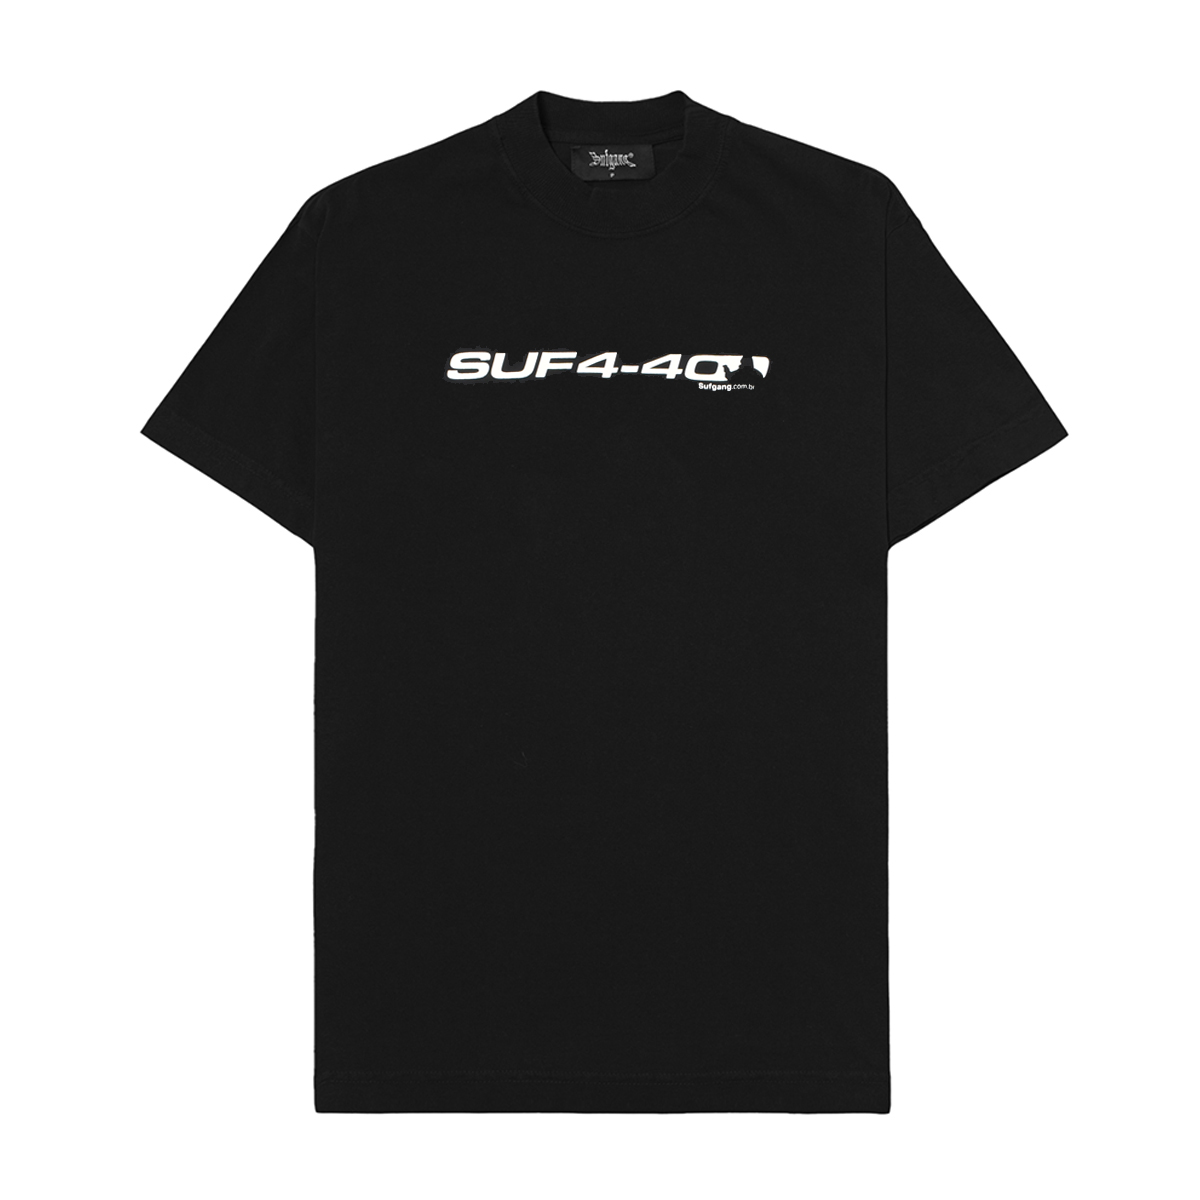 Camiseta Sufgang 4-40 (Black)